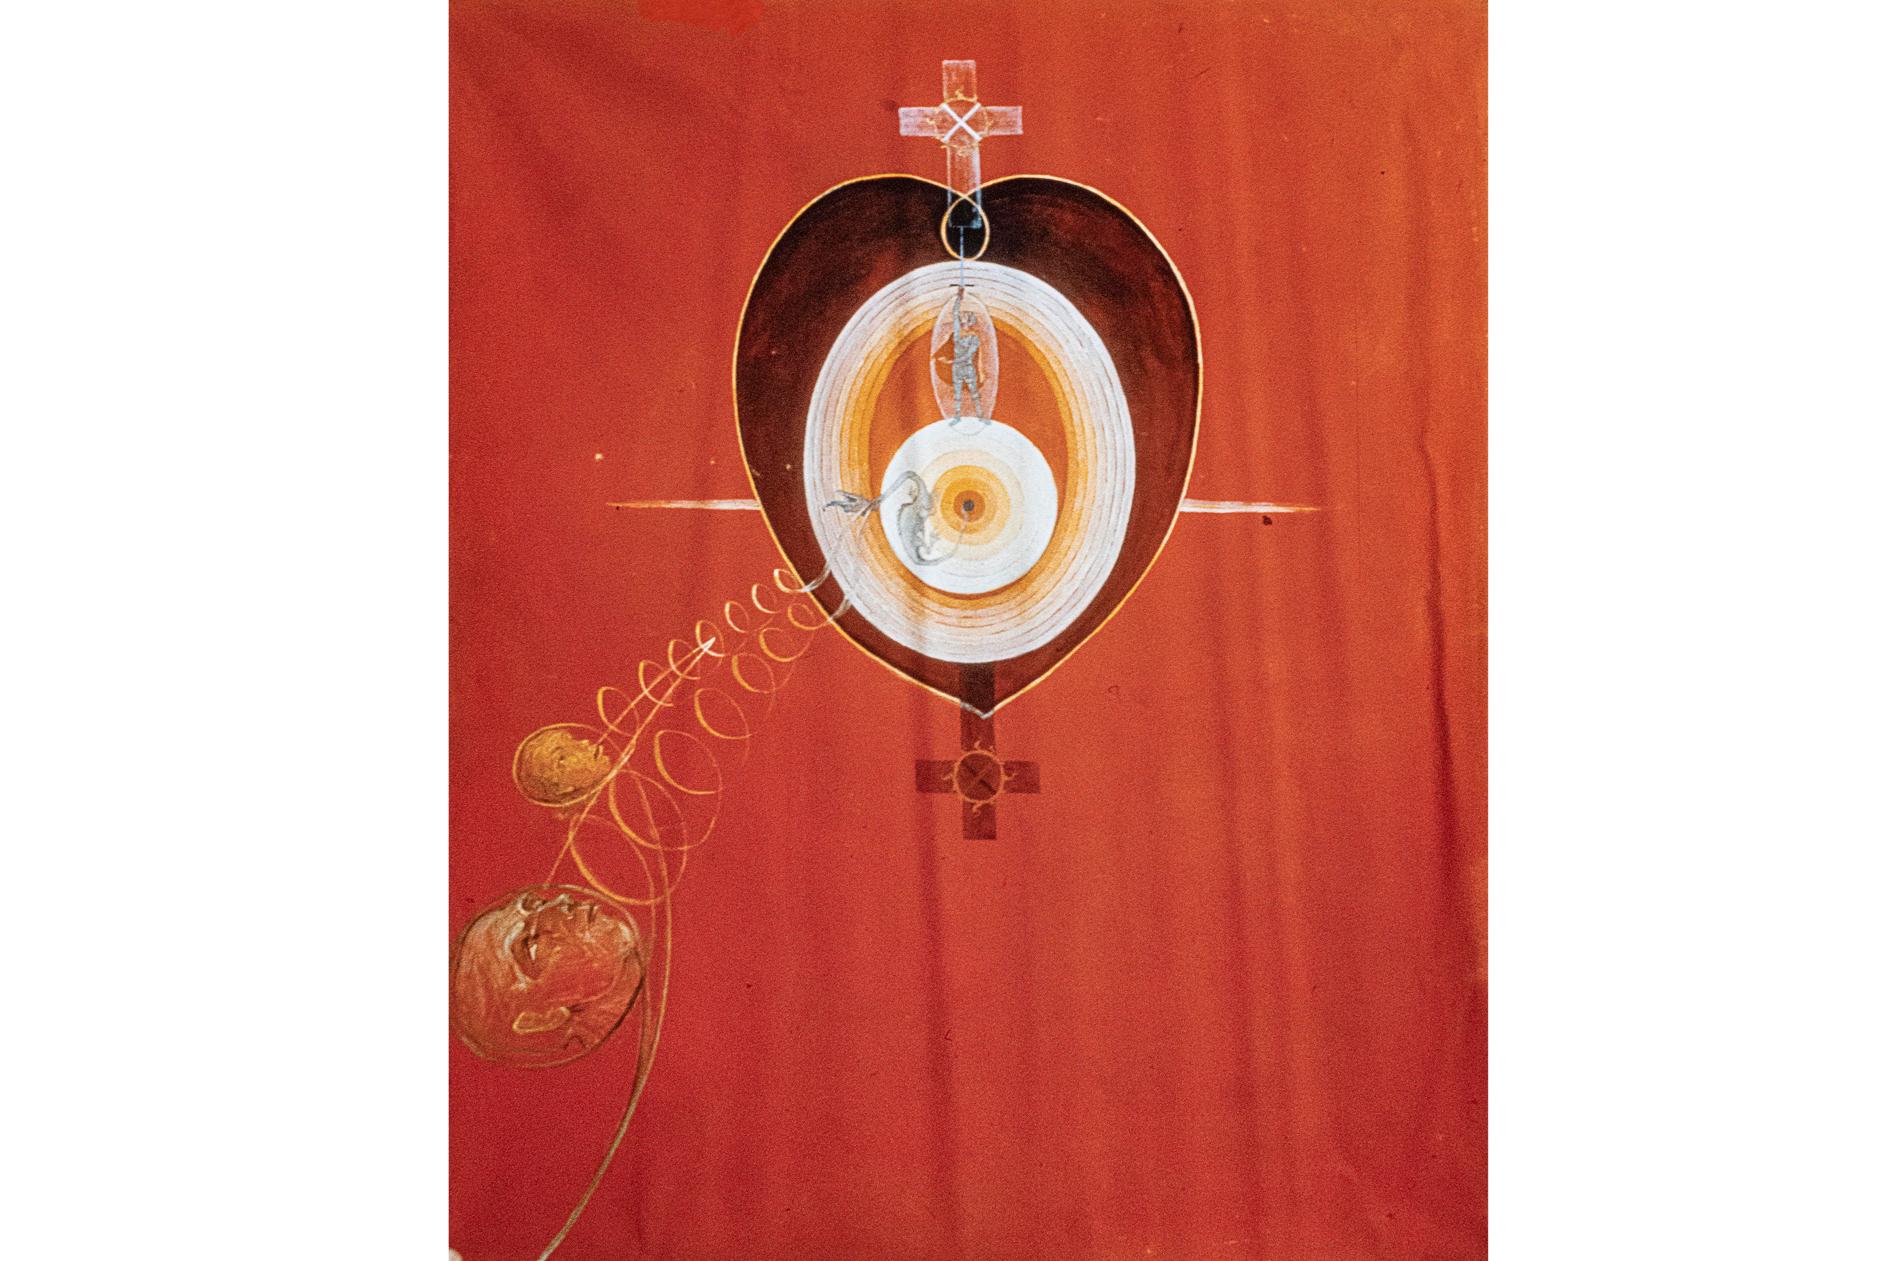 Hilma af Klints verk "Duvan nr 10" är försvunnet. Pressbild.